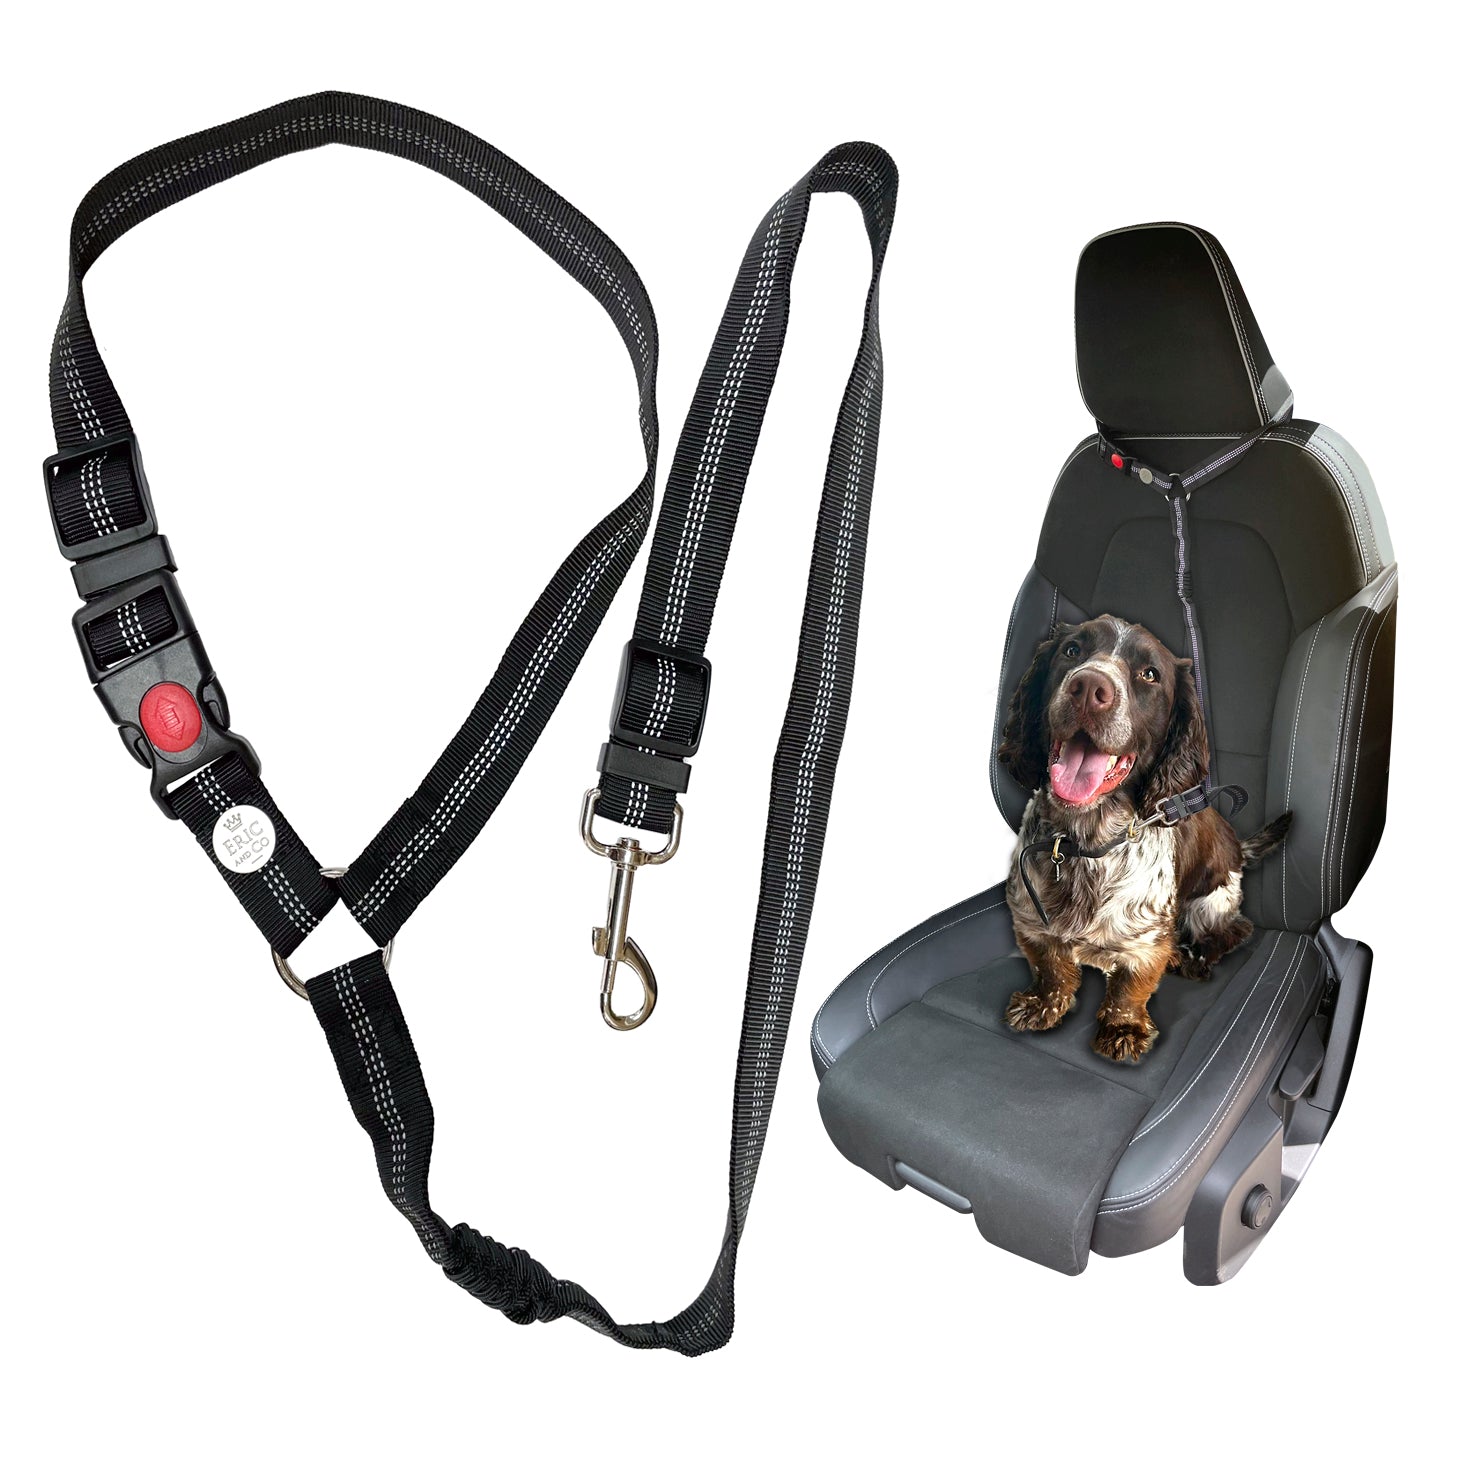 E001 - Headrest Seatbelt